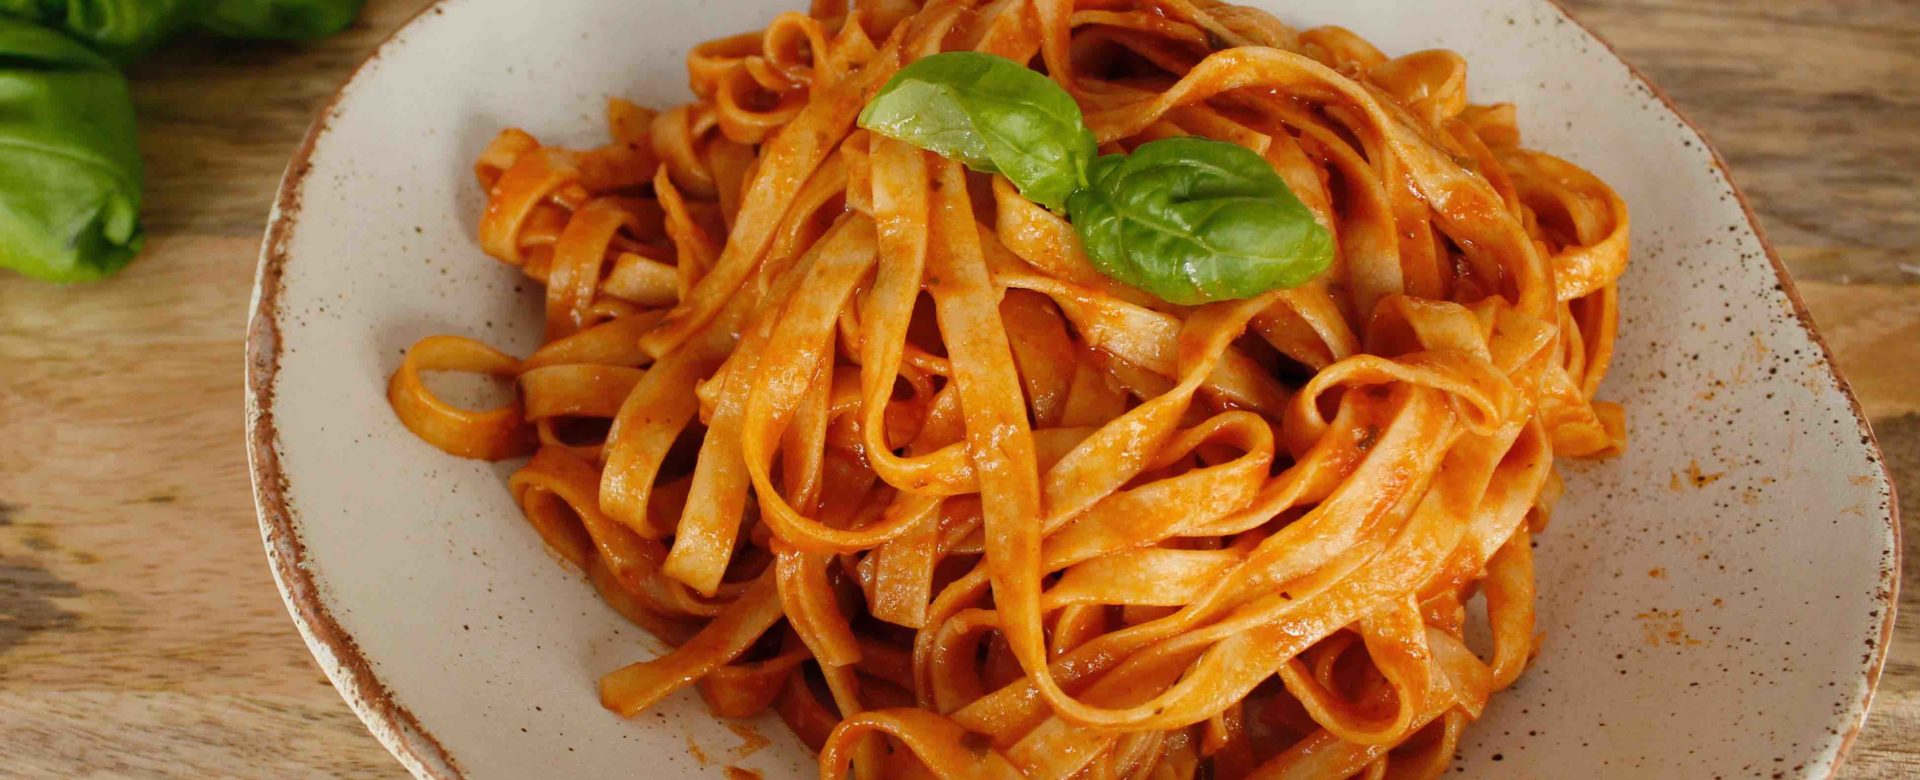 pasta tomaat basilicum